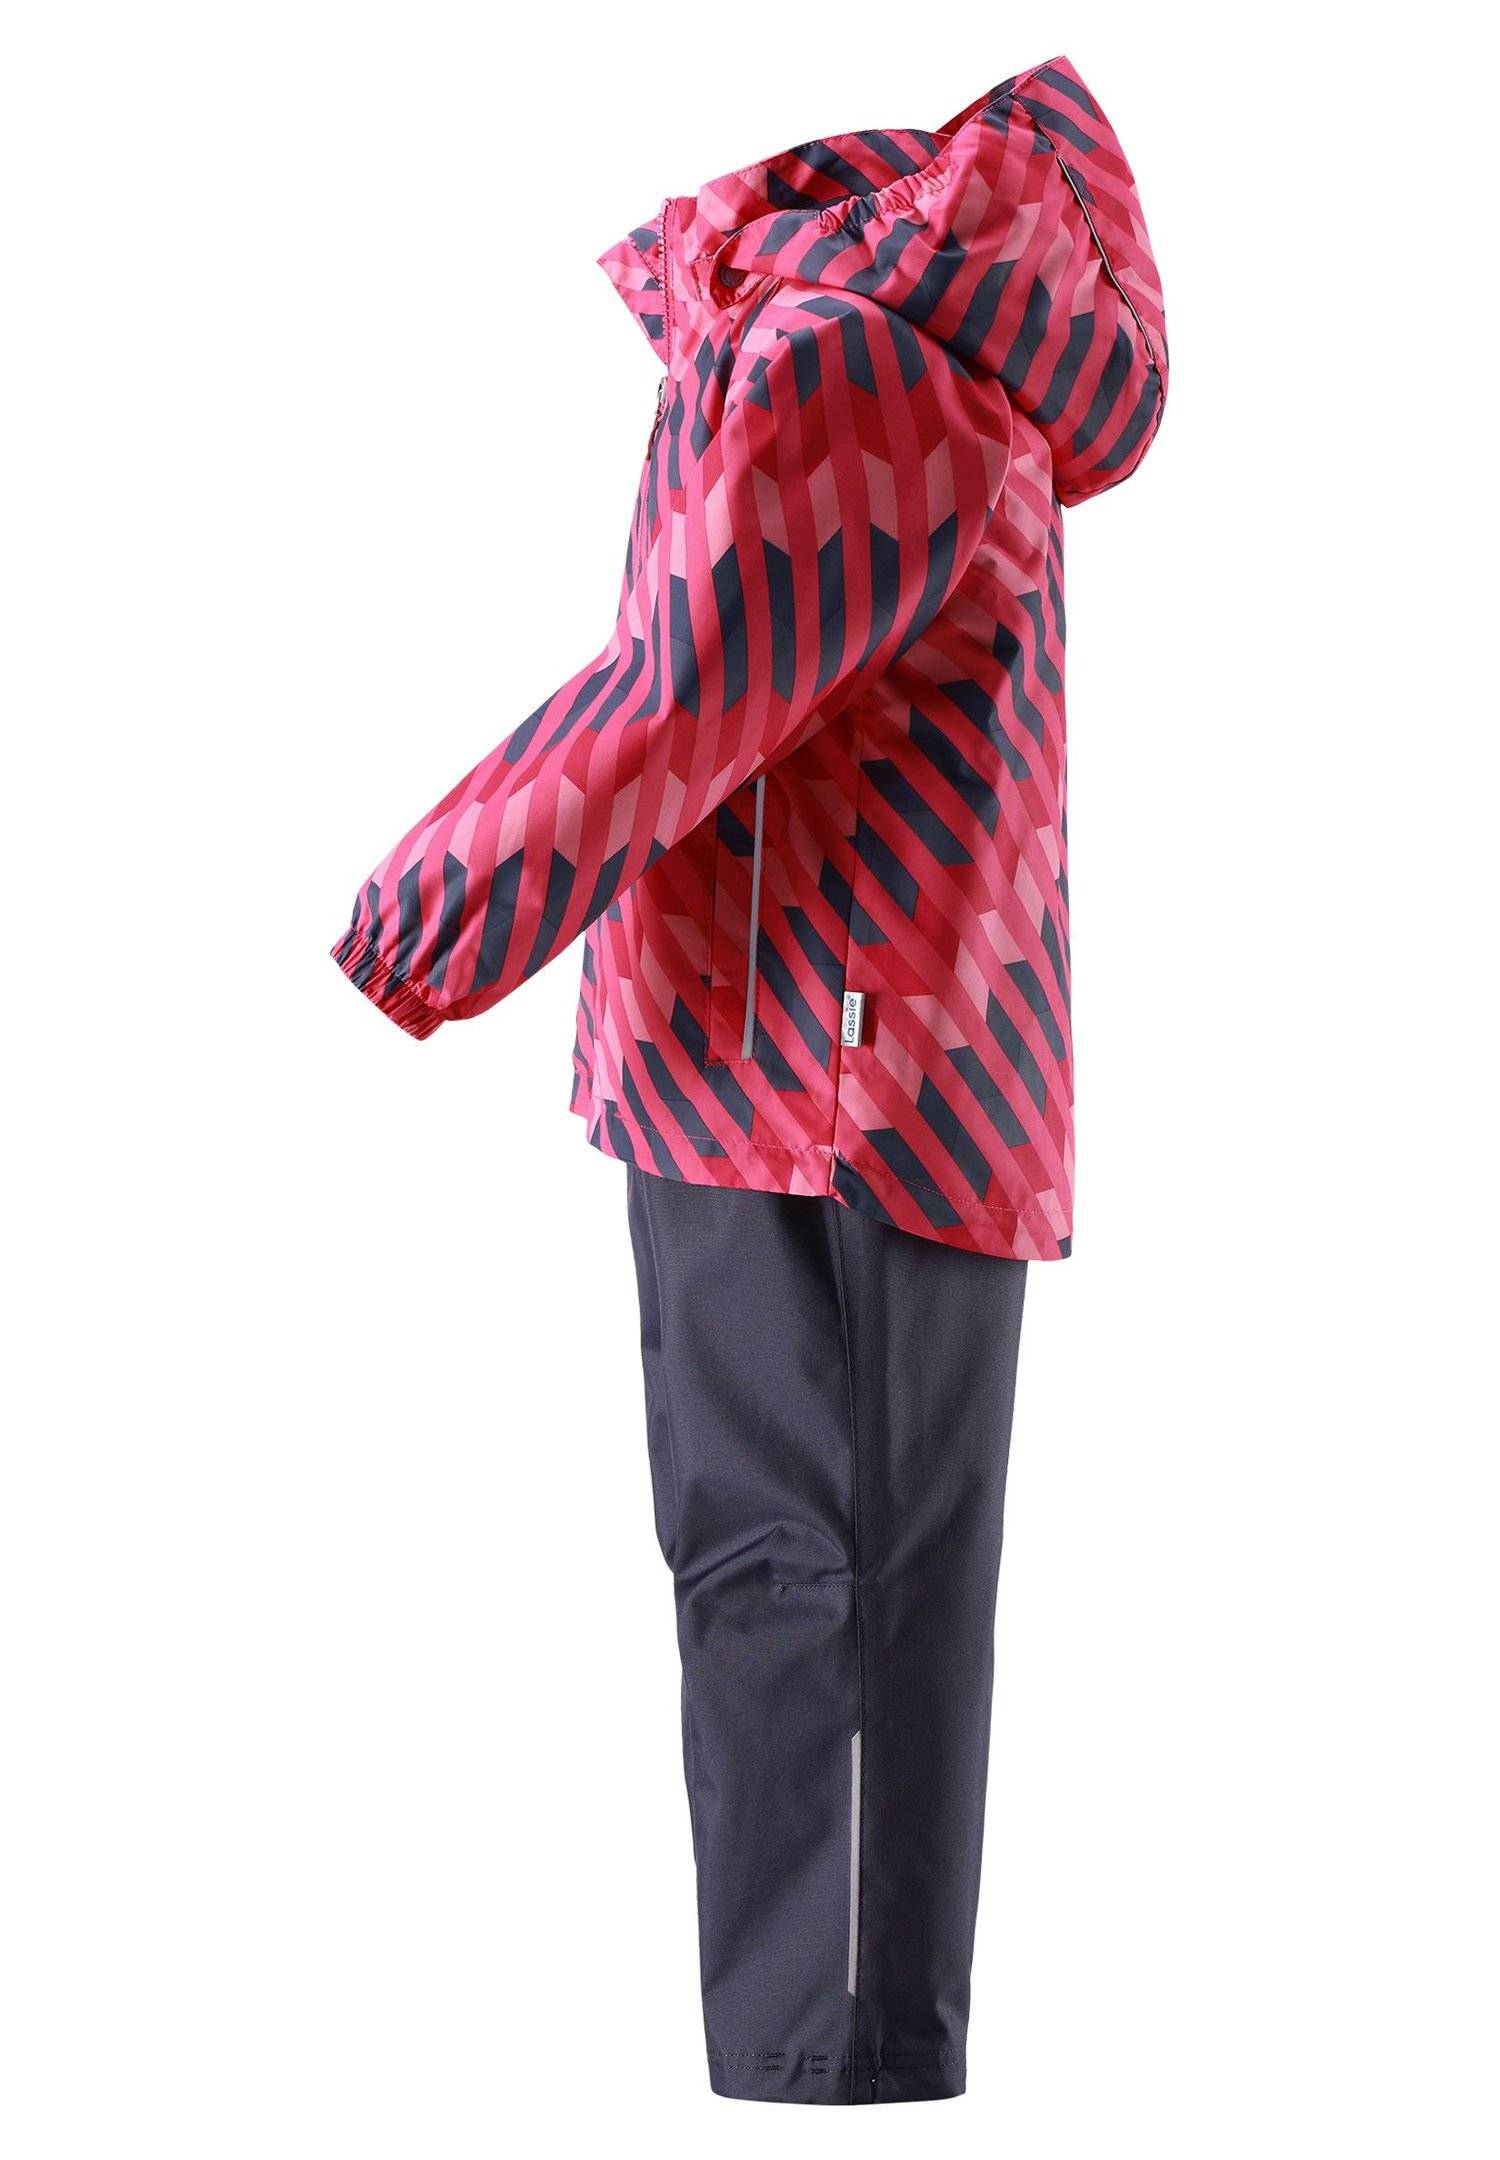 Комплект куртка/брюки Lassie by Reima цвет: розовый (723702-3401-110) длядевочек купить в Старом Осколе и характеристики - SKU1577974